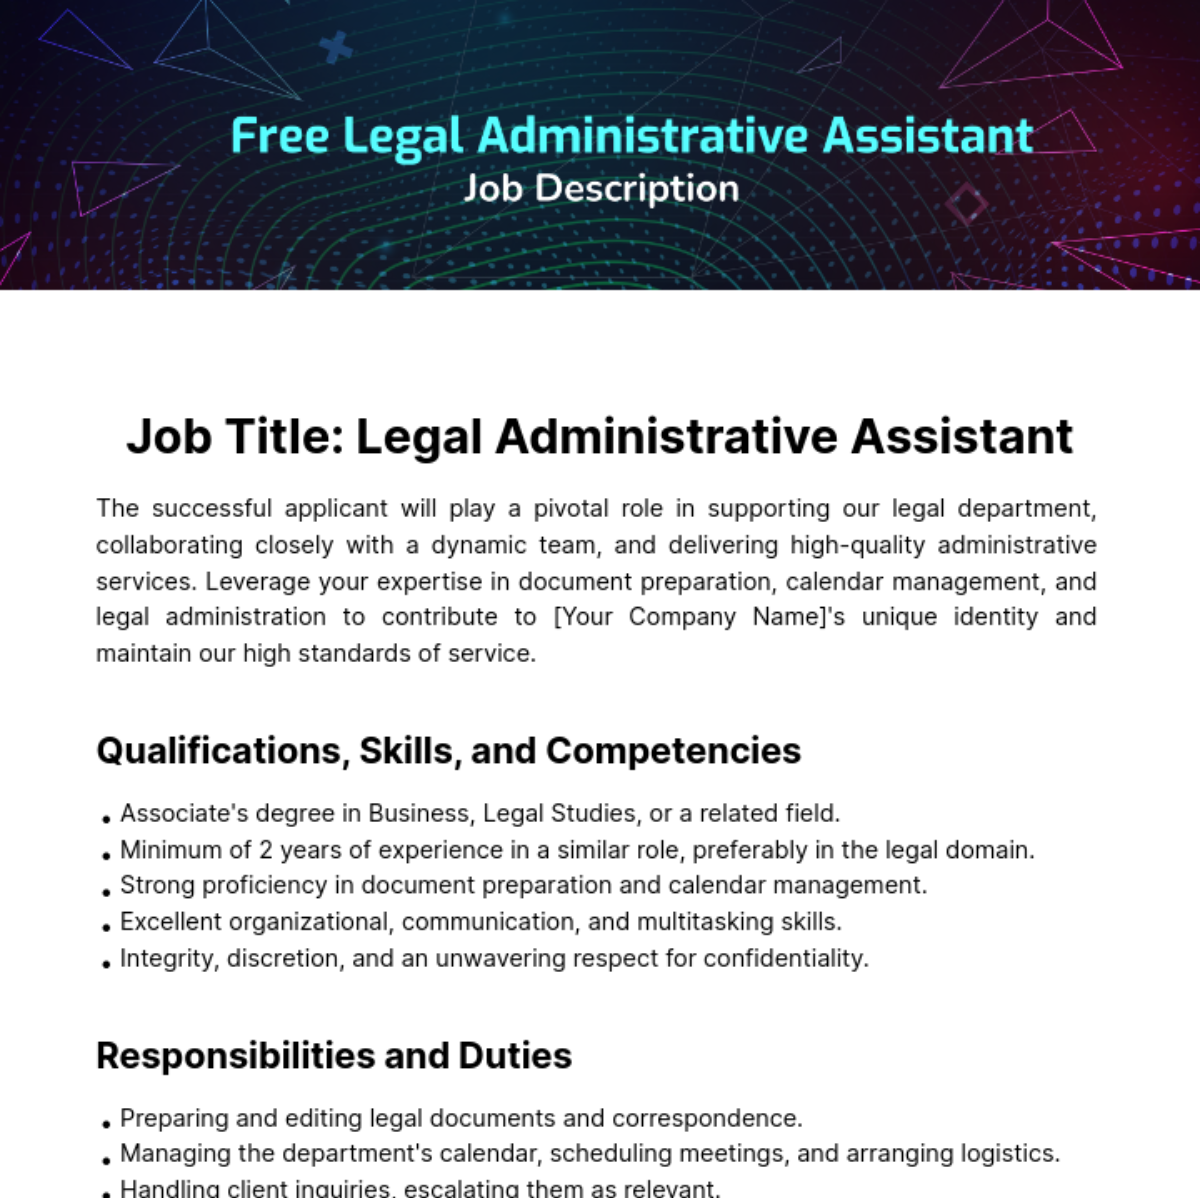 Free Legal Administrative Assistat Job Description Template